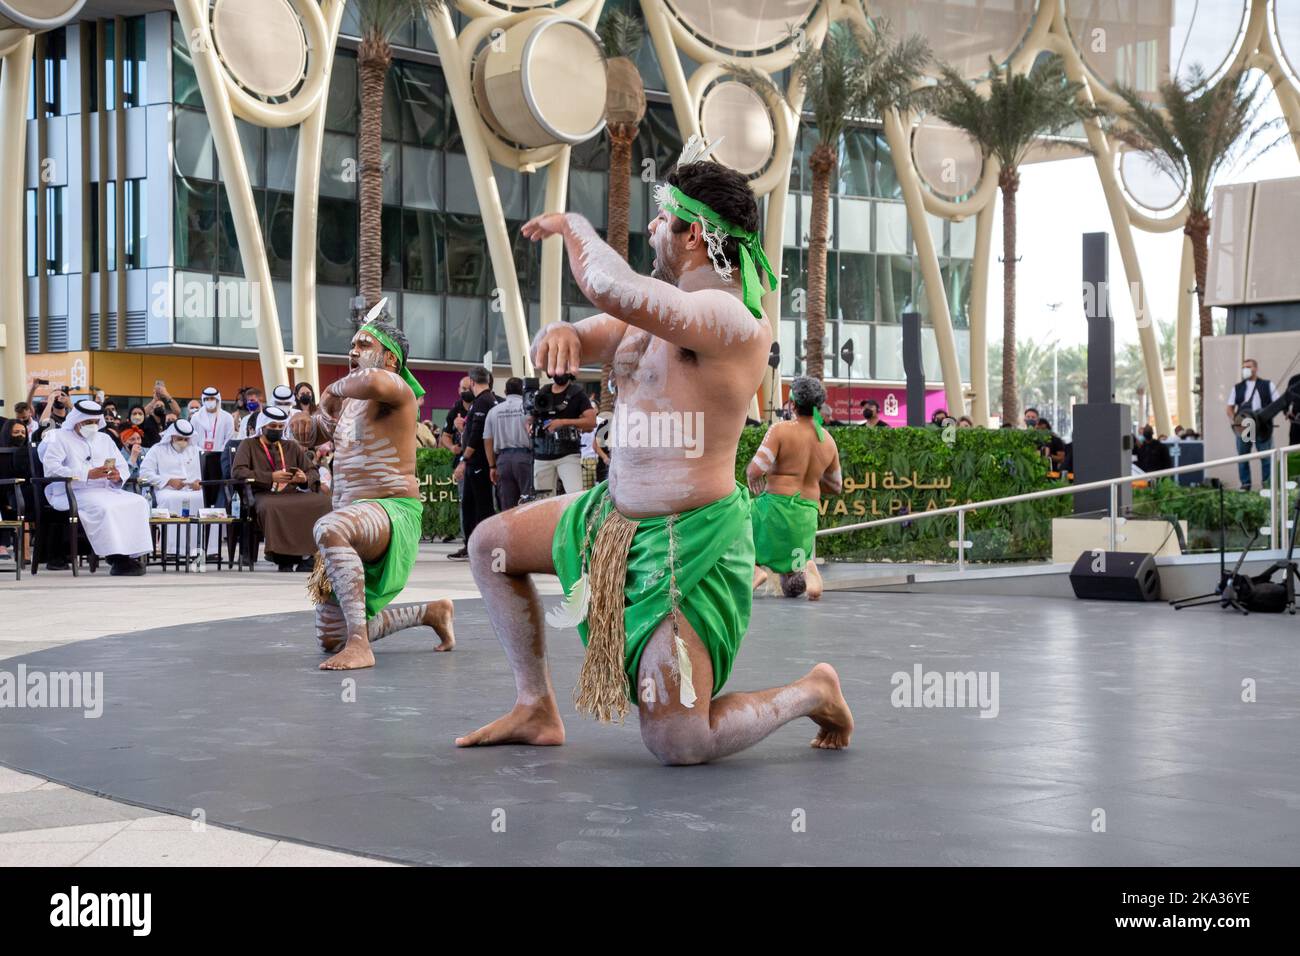 Expo 2020 Al était des danseurs aborigènes du Dome qui se produisent en basse lumière avec du grain et hors foyer Banque D'Images